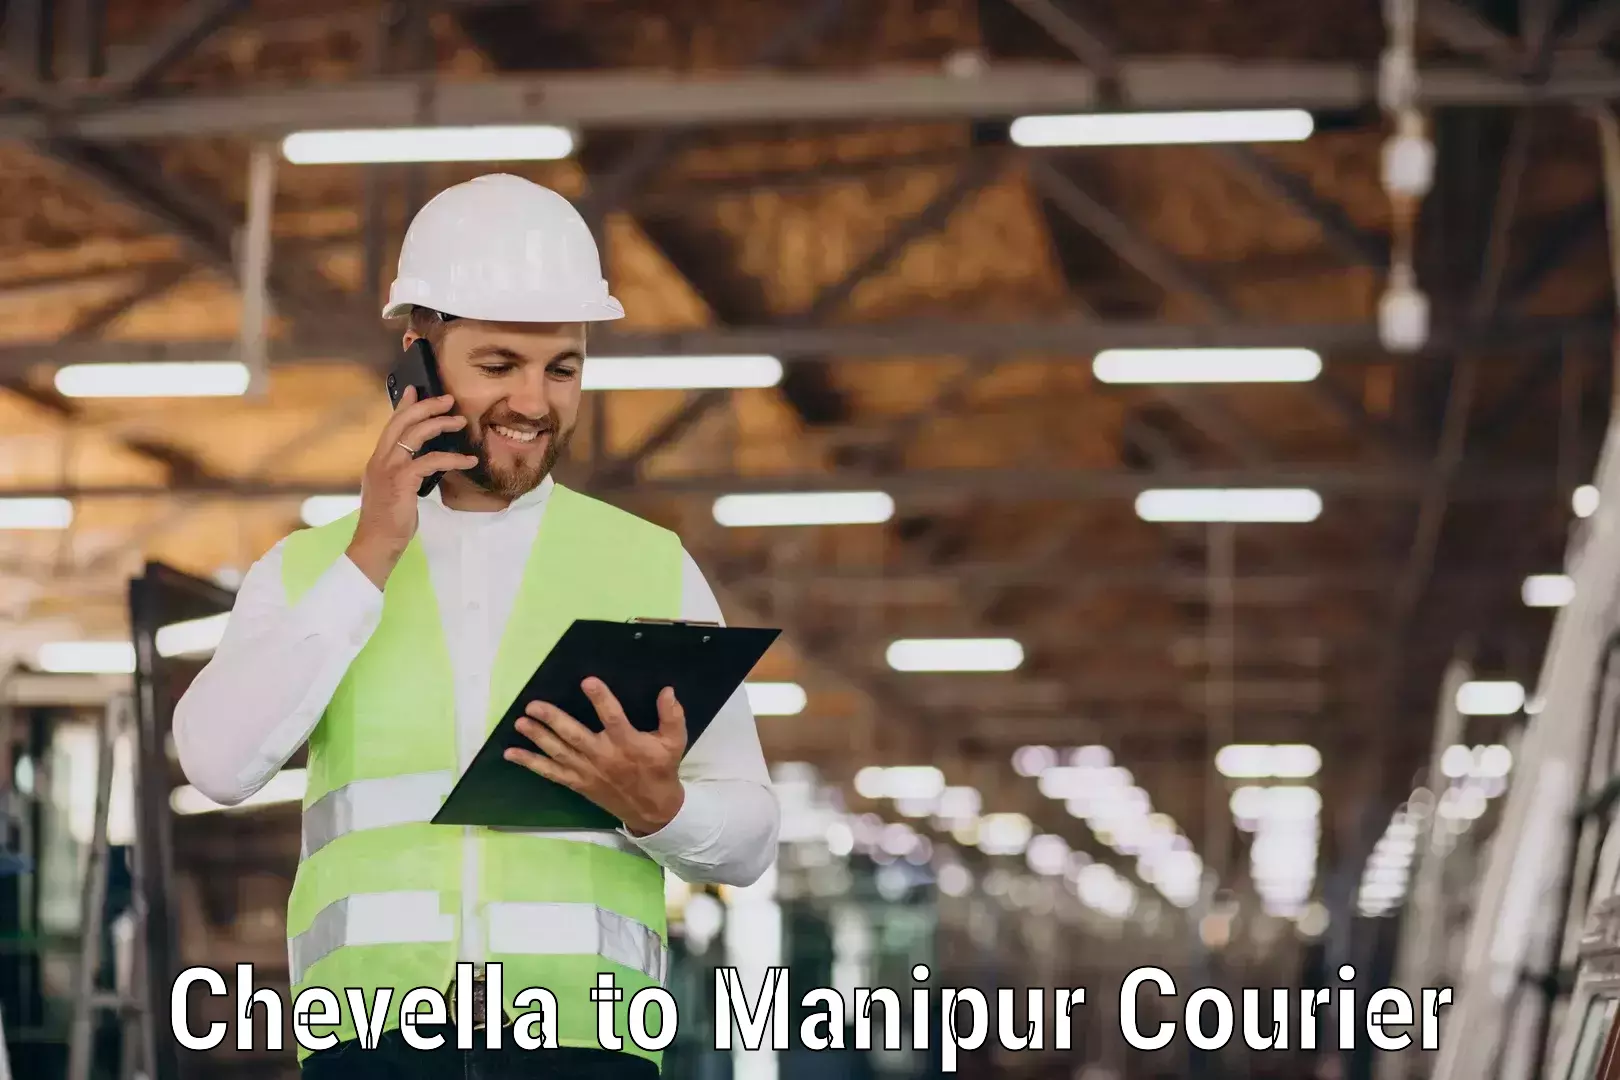 Reliable courier service Chevella to IIIT Senapati